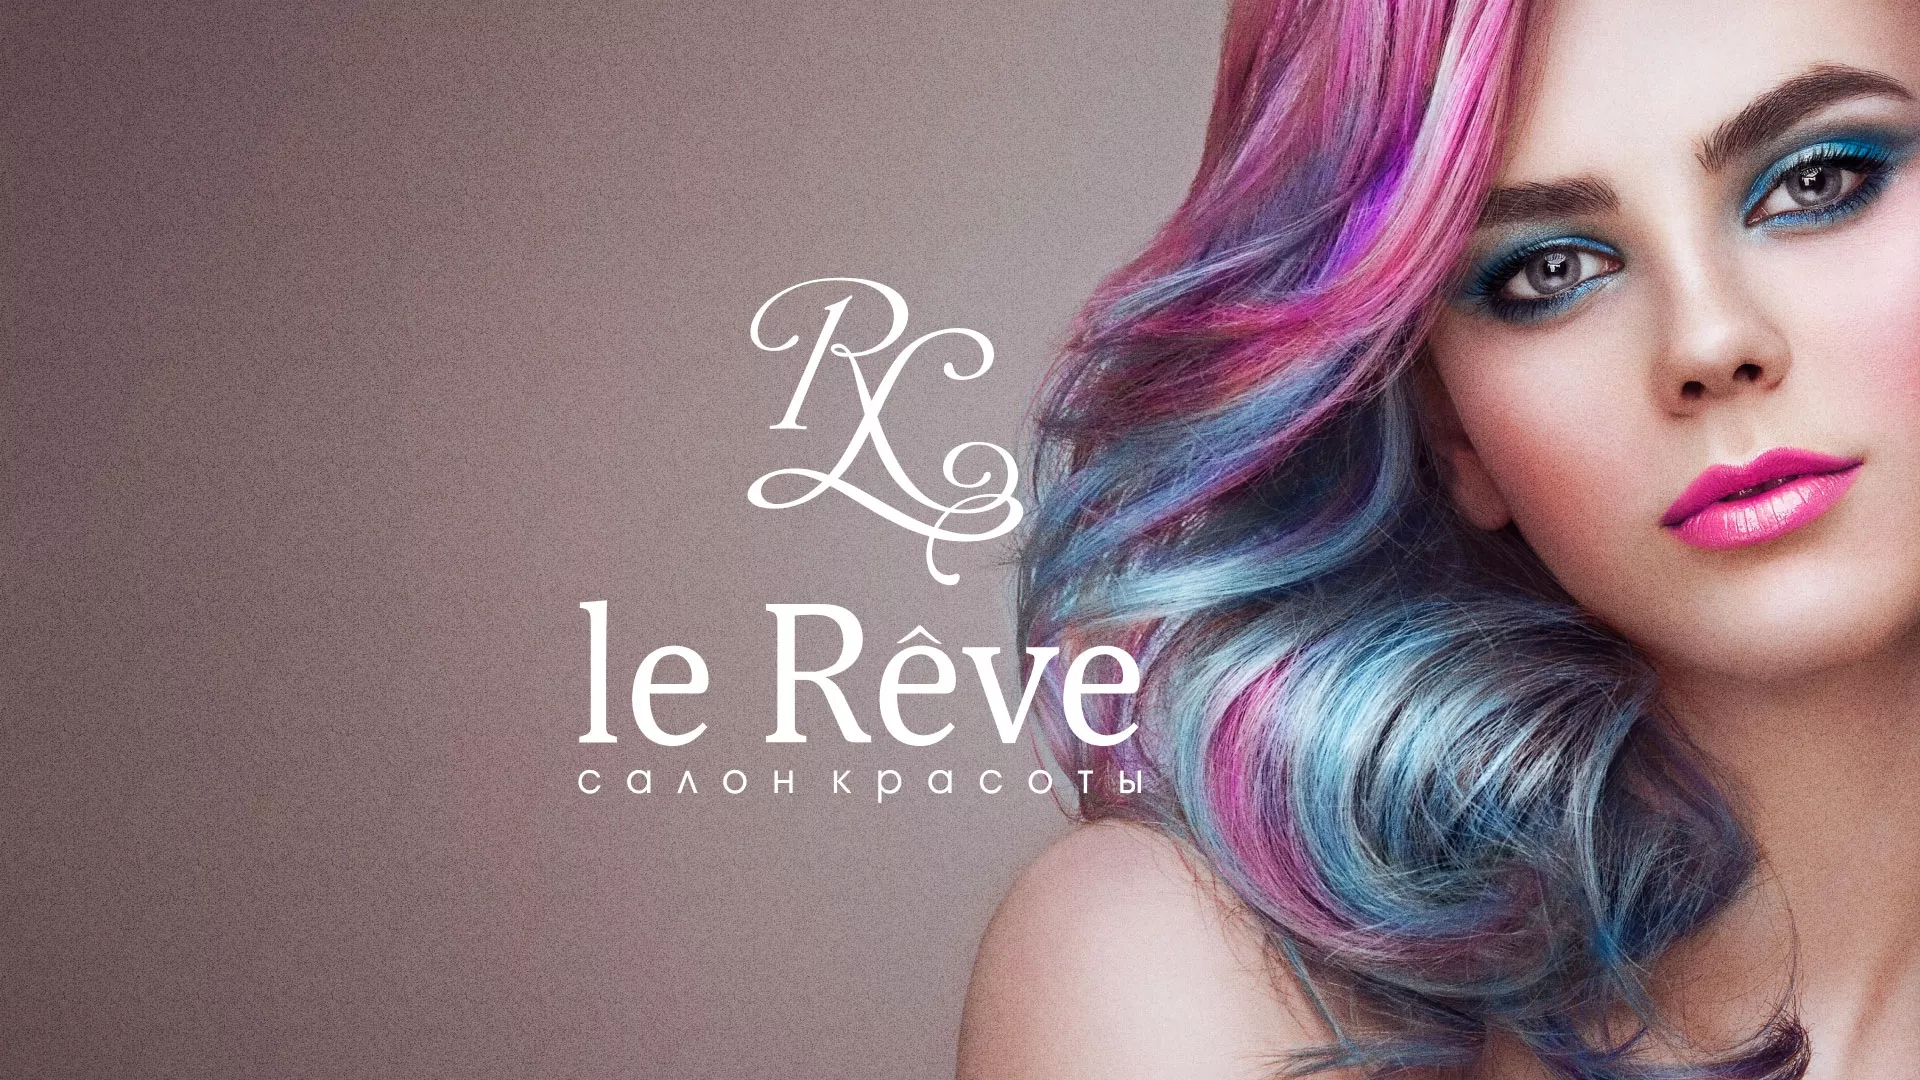 Создание сайта для салона красоты «Le Reve» в Боброве